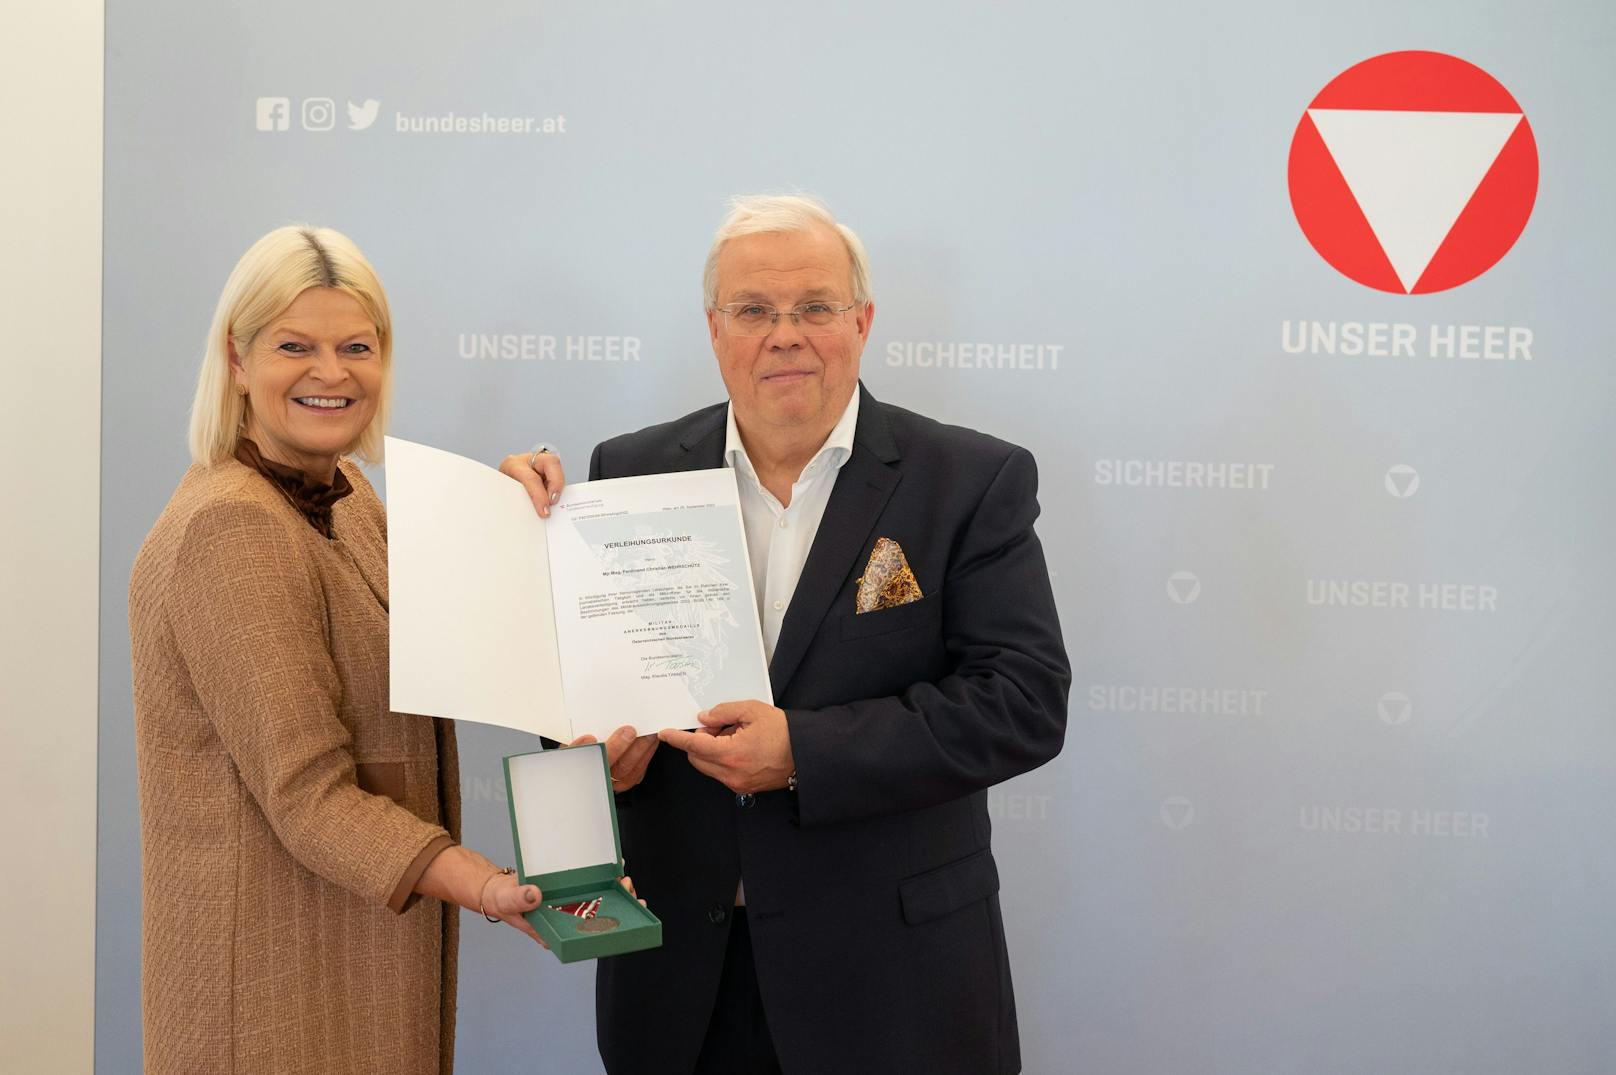 "Großartige Leistung" – ORF-Star erhält hohe Auszeichnung